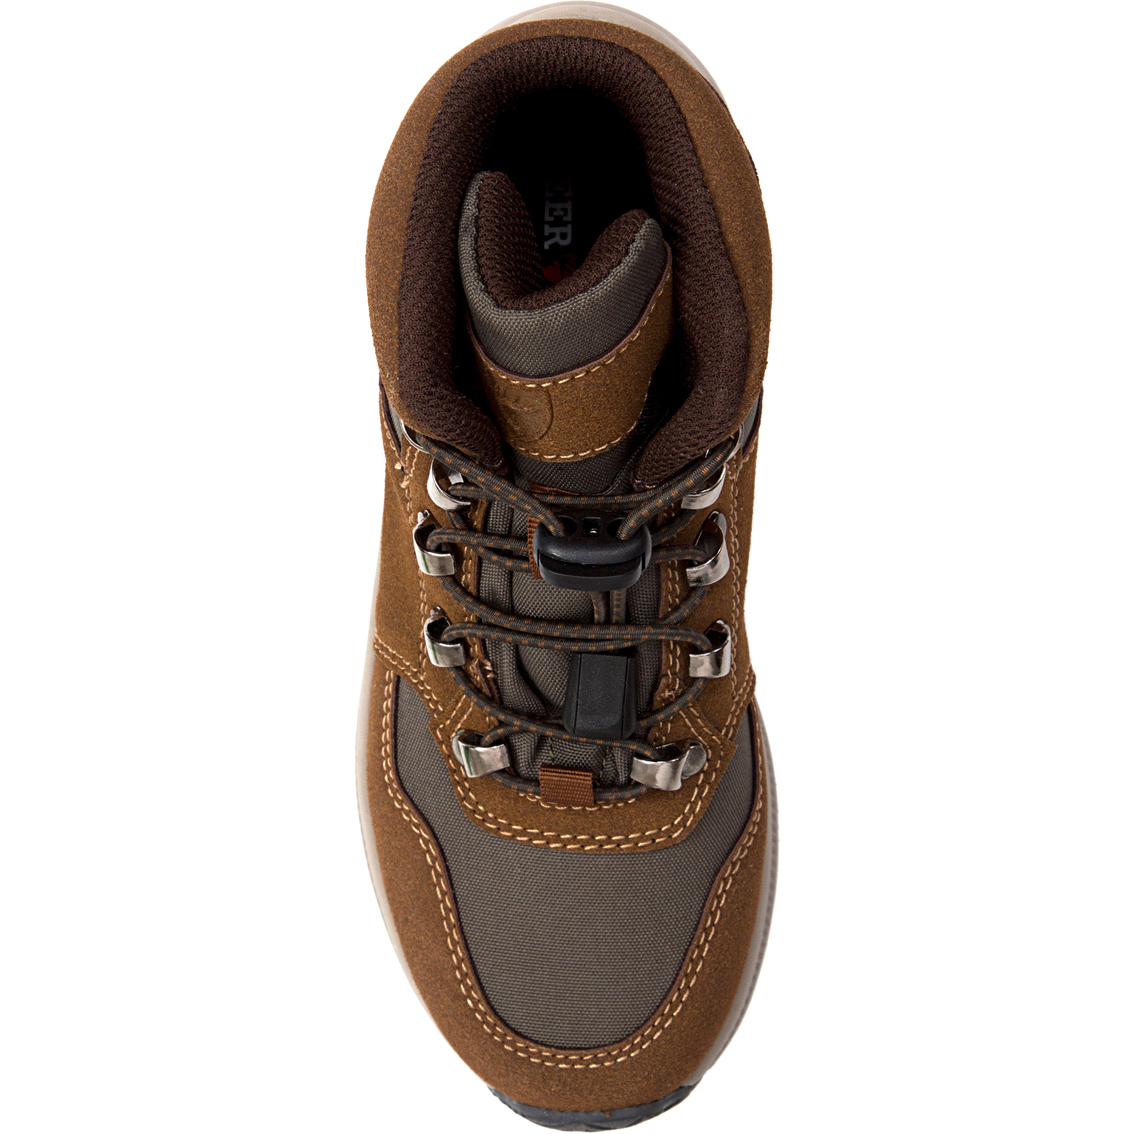 Deer Stags Grade School Boys Peak Jr Casual Hybrid Hiker High Top Sneaker Boots - Image 5 of 8